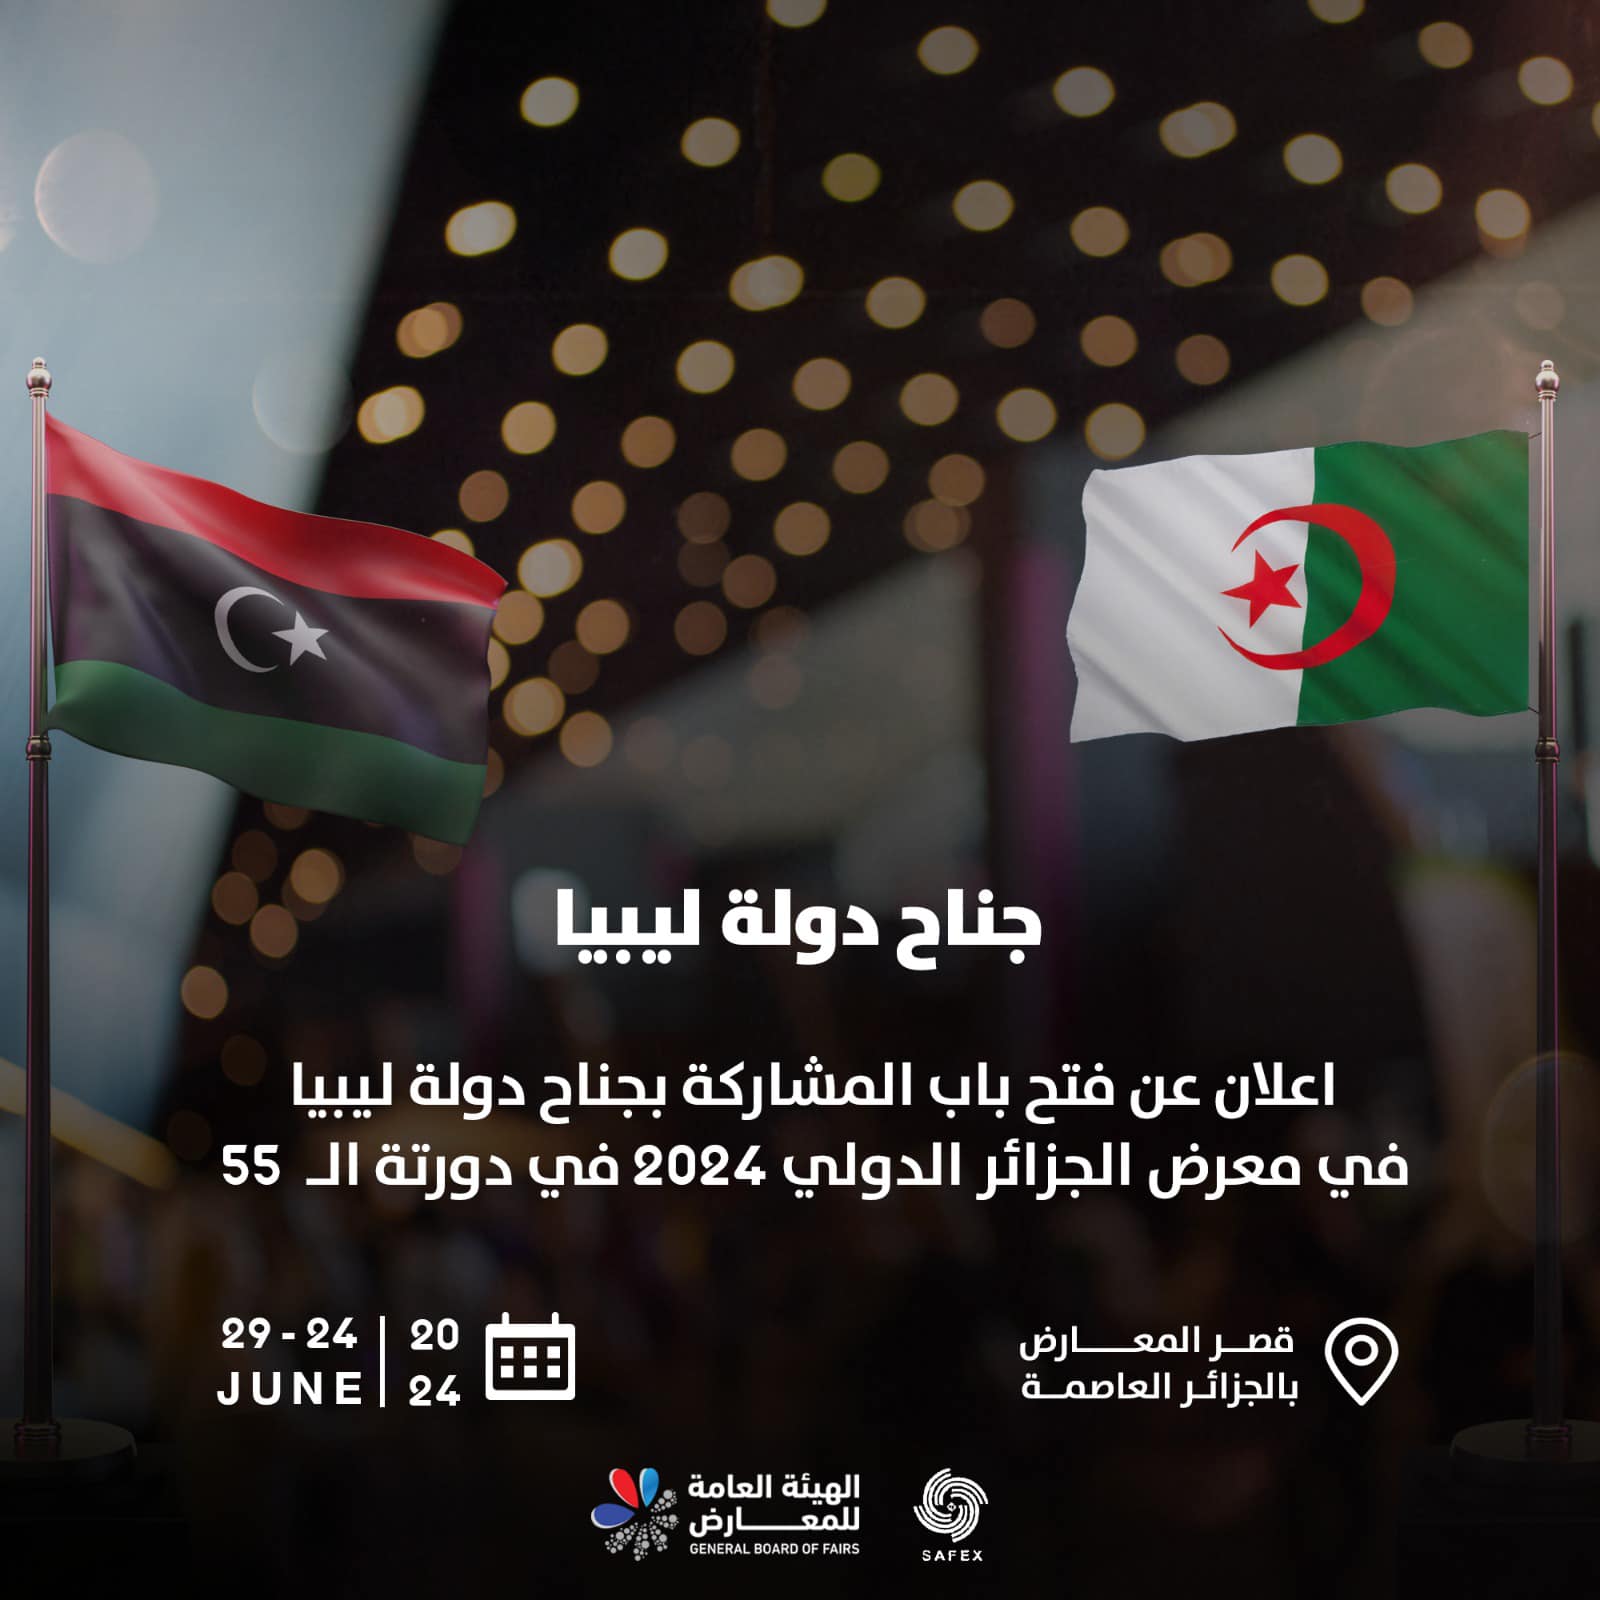 الهيئة العامة للمعارض تعلن عن فتح باب المشاركة للمؤسسات والشركات والمصارف في معرض الجزائر الدولي2024.